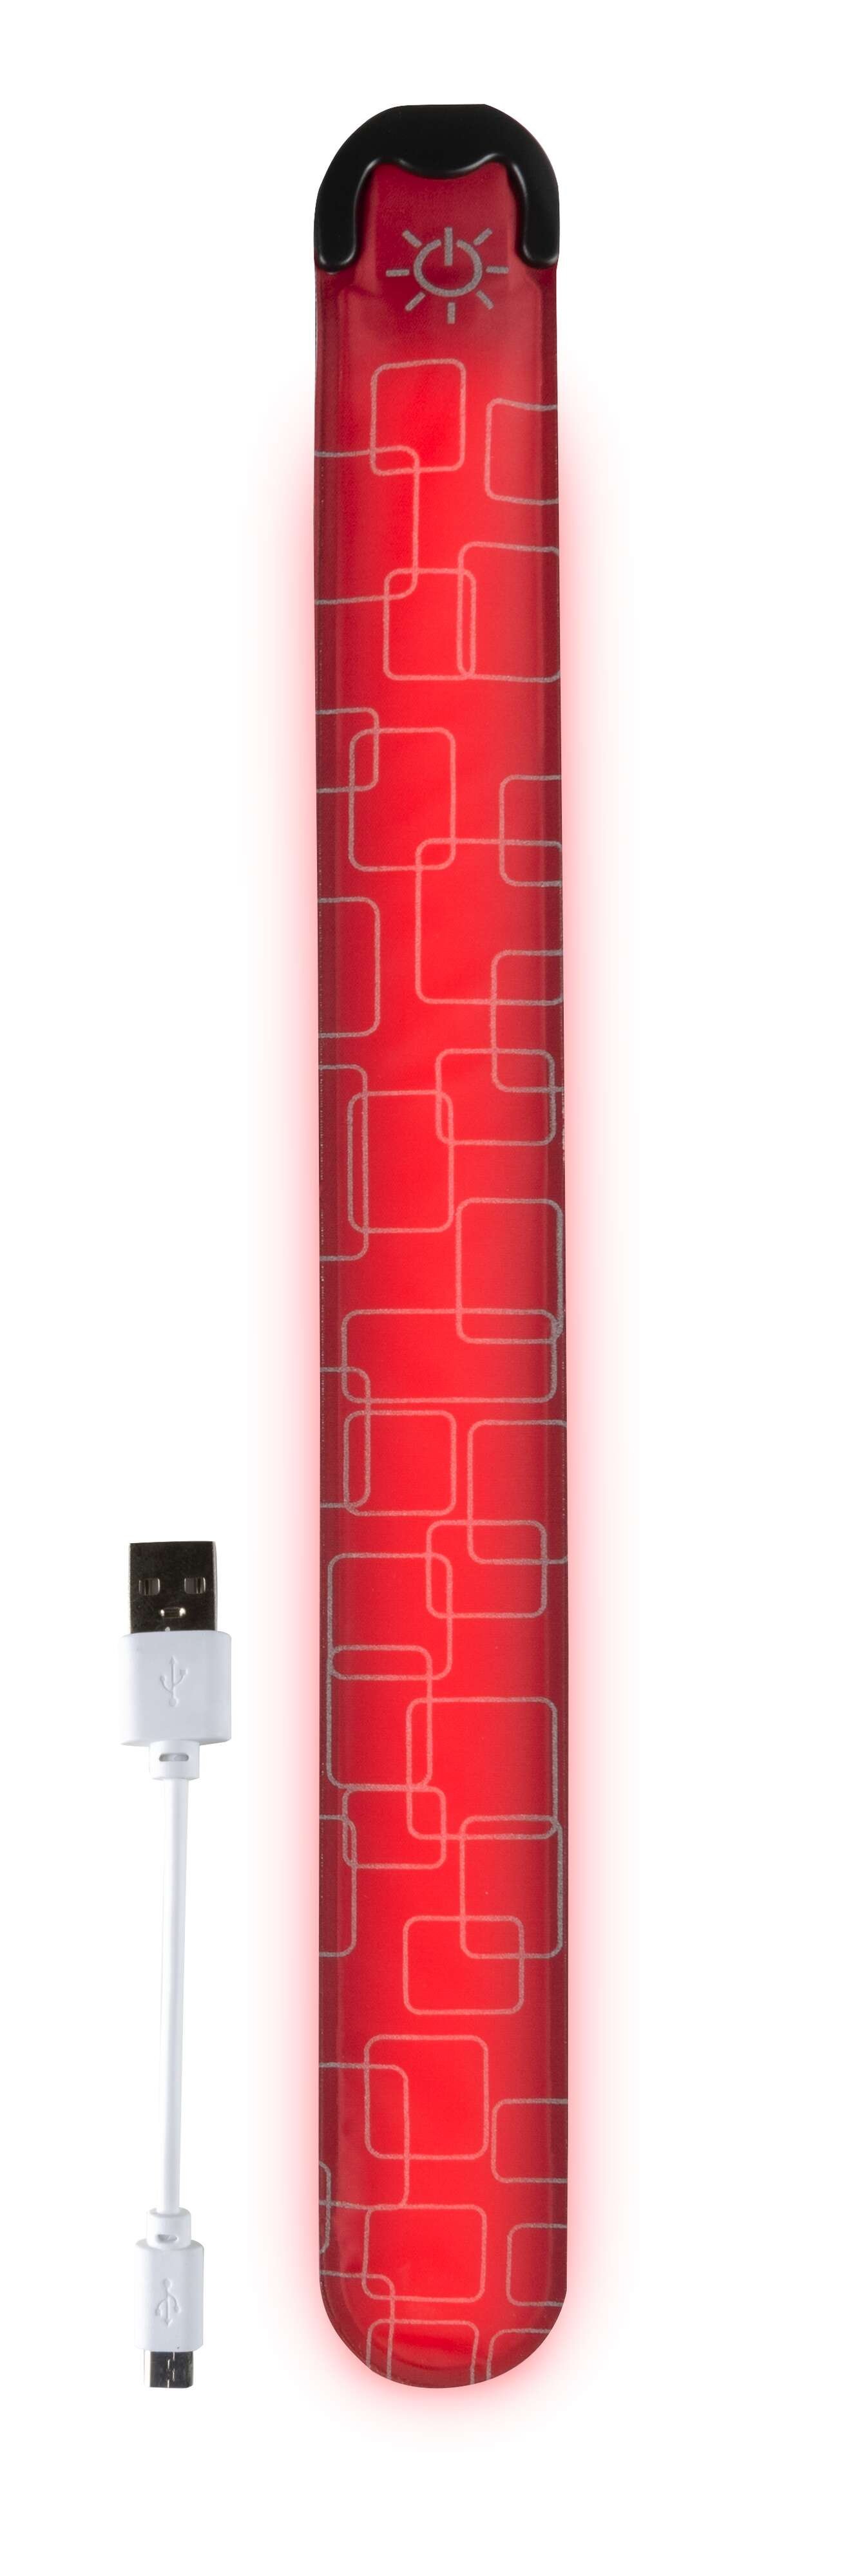 LED slap wrap, luminous slap wrap with USB charging option 36x3.5 cm red